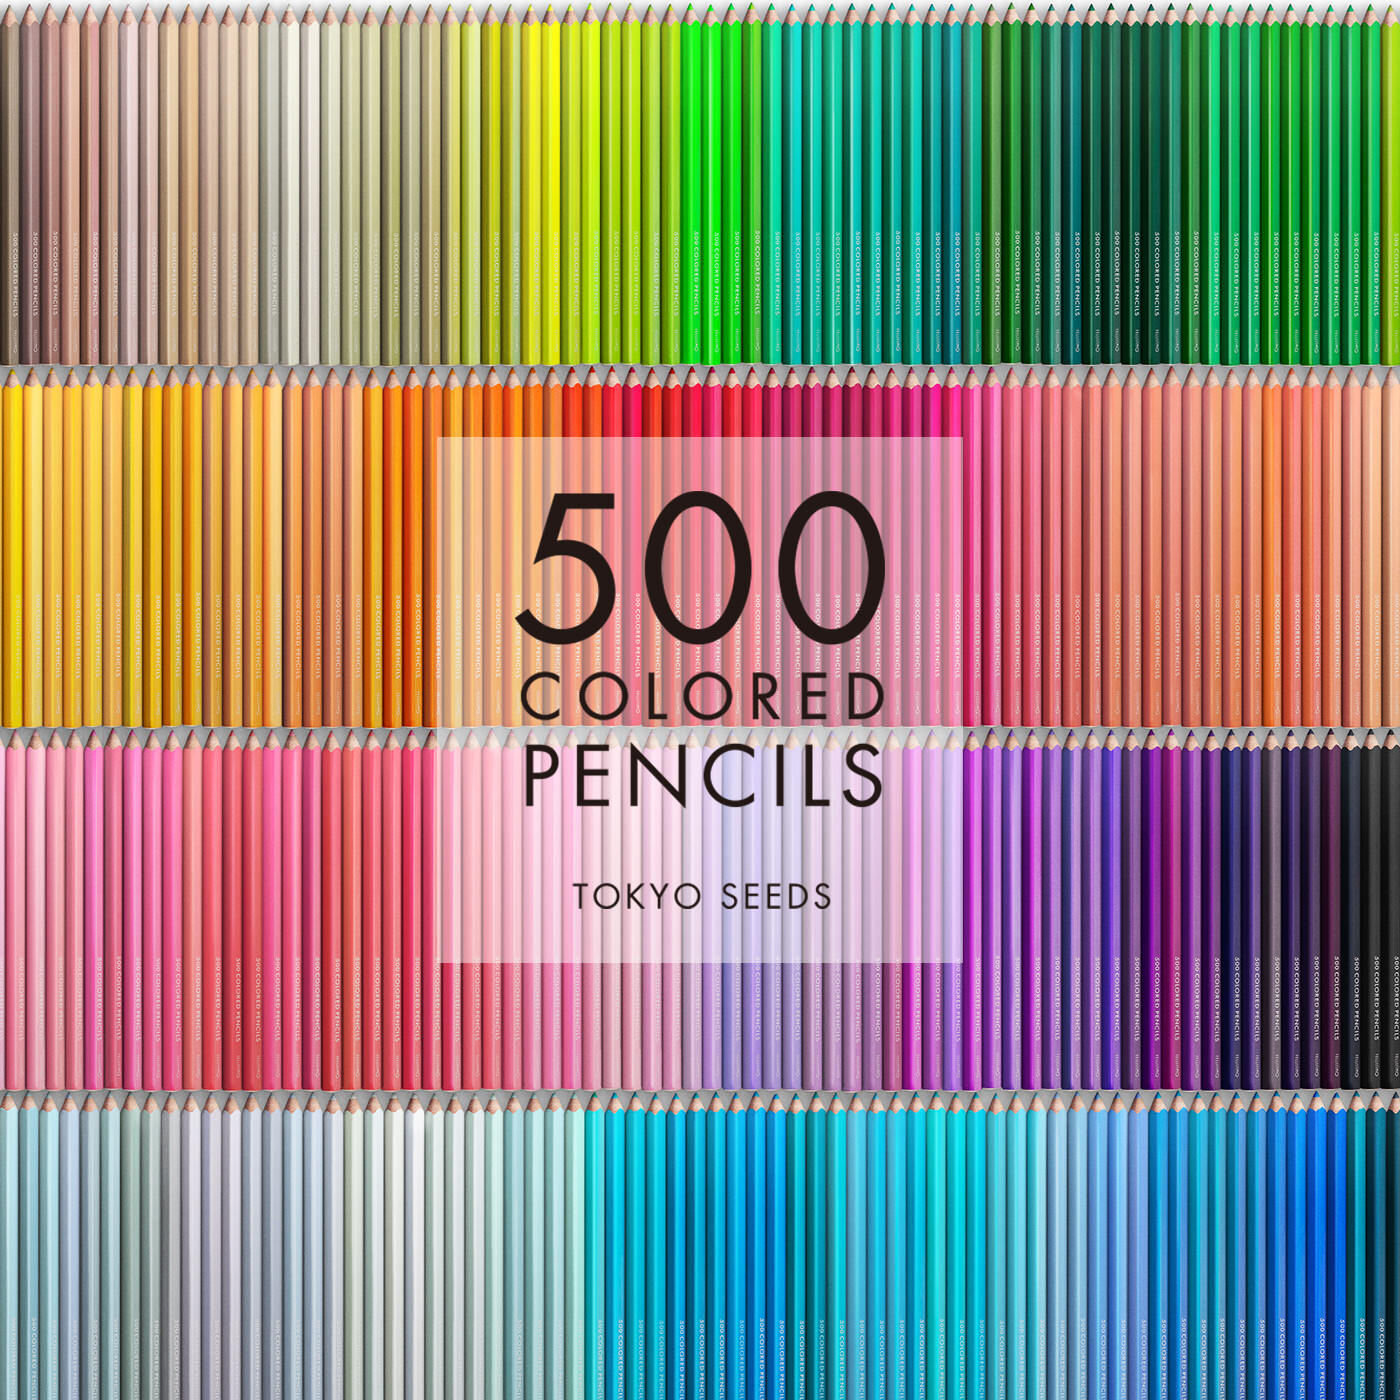 Real Stock|【249/500 FEELING JADED】500色の色えんぴつ TOKYO SEEDS|1992年、世界初の「500色」という膨大な色数の色えんぴつが誕生して以来、その販売数は発売当初から合わせると、世界55ヵ国10万セット以上。今回、メイド・イン・ジャパンにこだわり、すべてが新しく生まれ変わって登場しました。